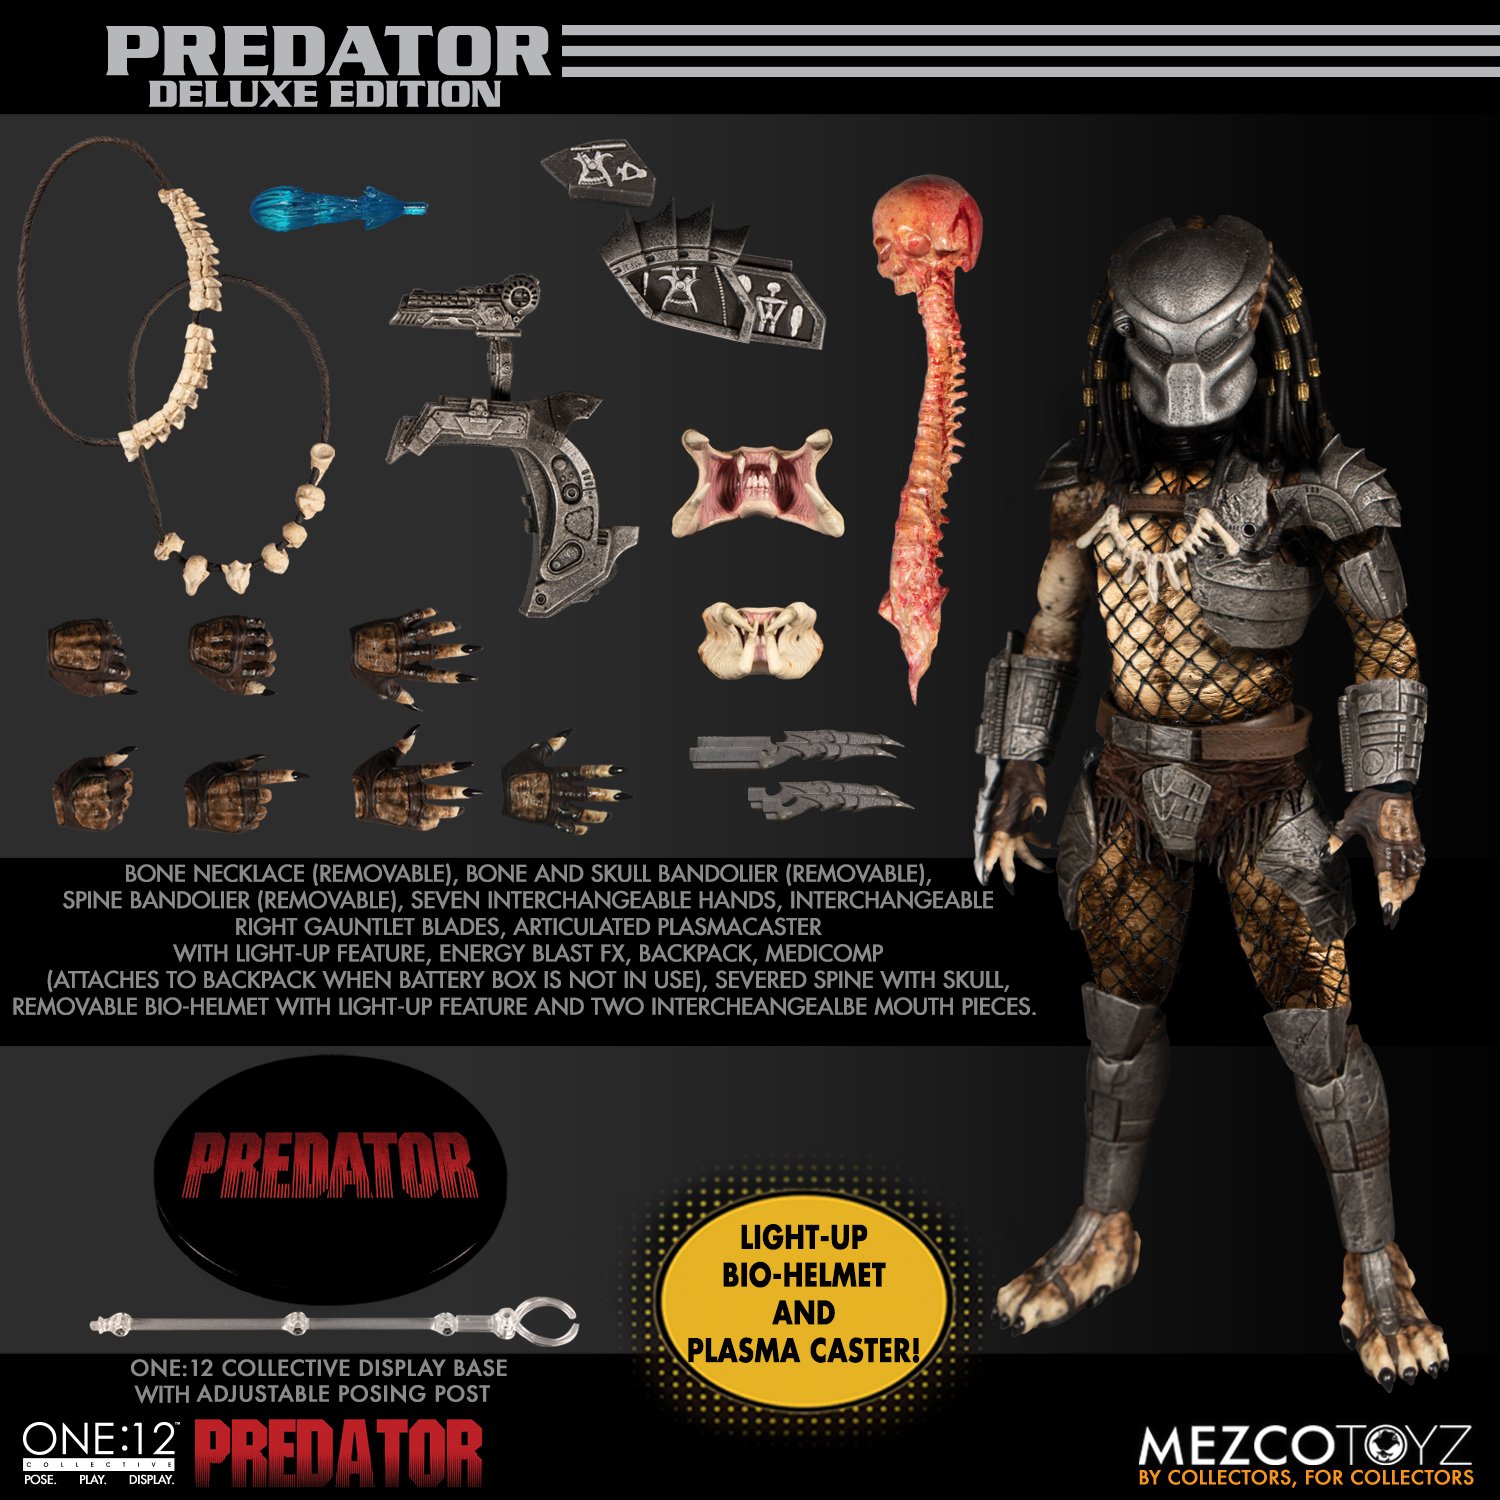 Mezco Predator